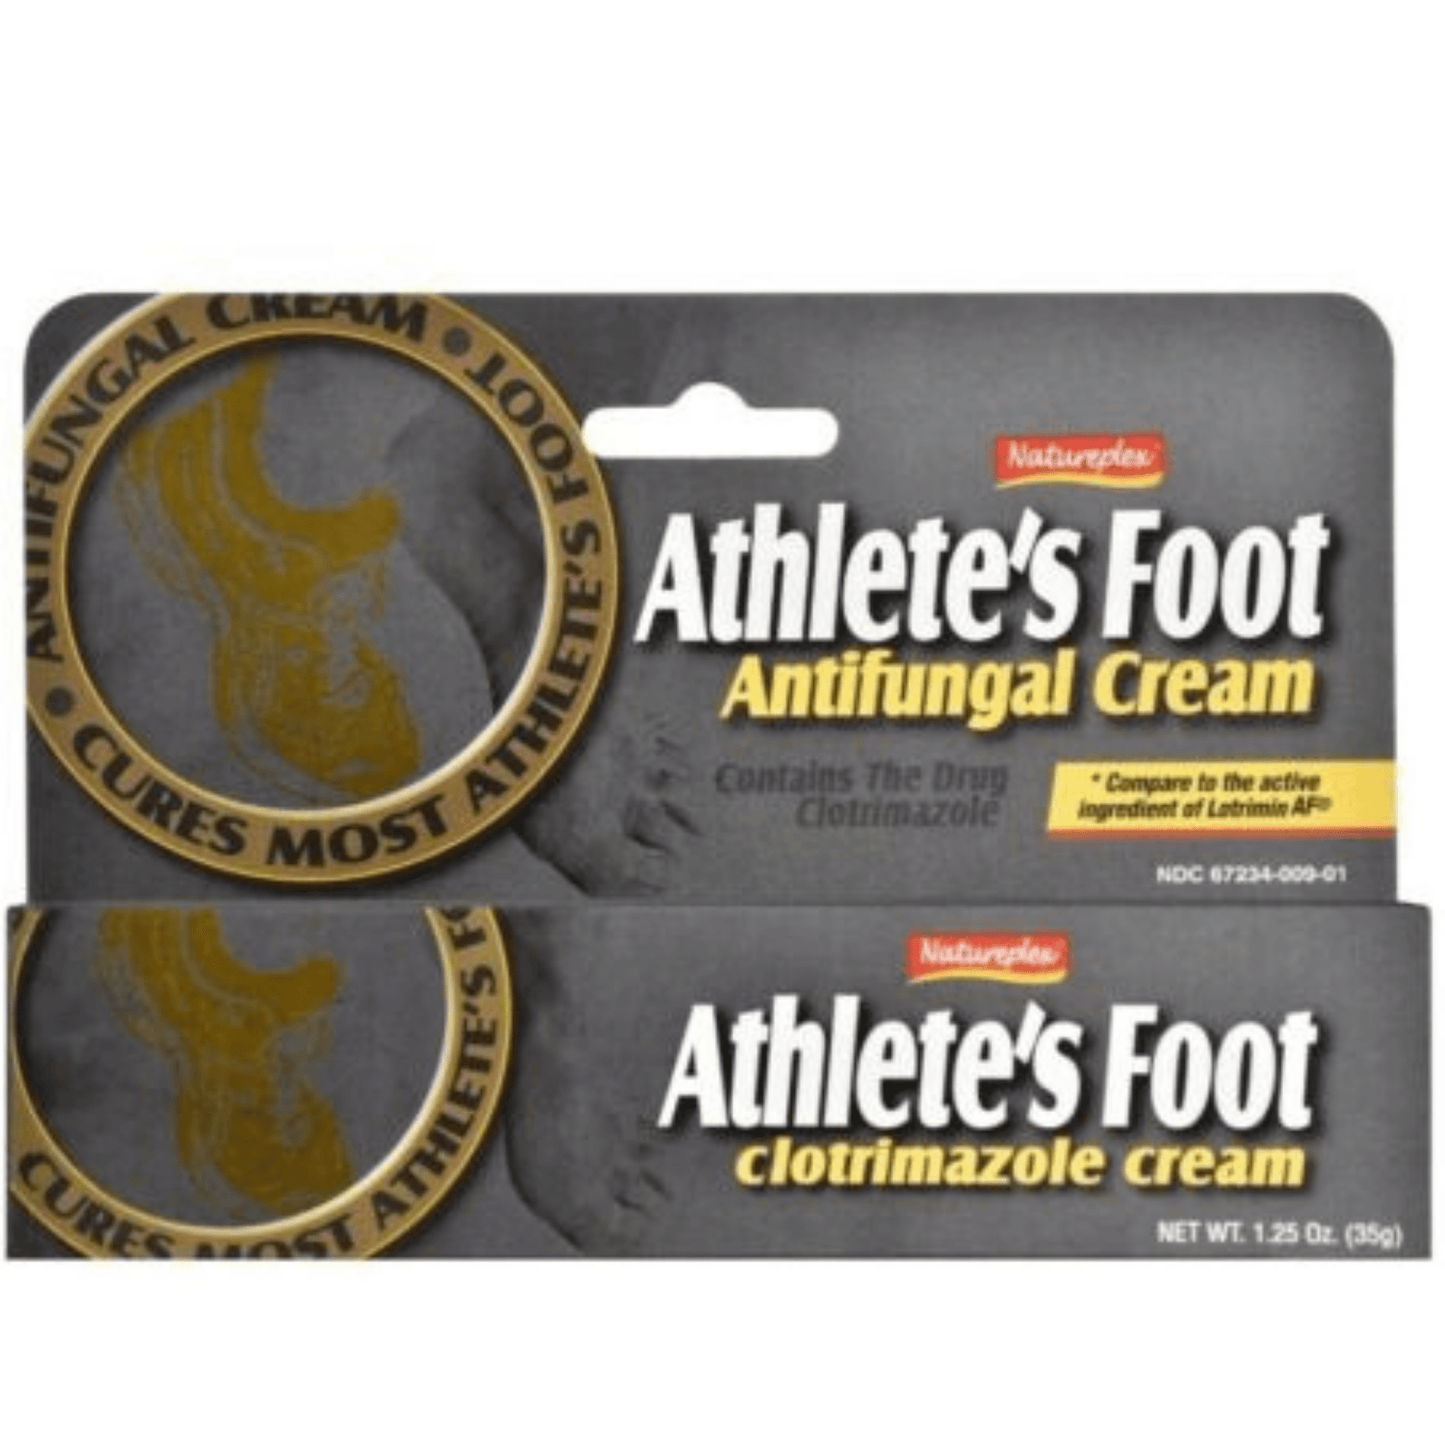 NATUREPLEX Health Care NATUREPLEX -  Athlete's Foot Antifungal Cream 1.25 Oz (35g)